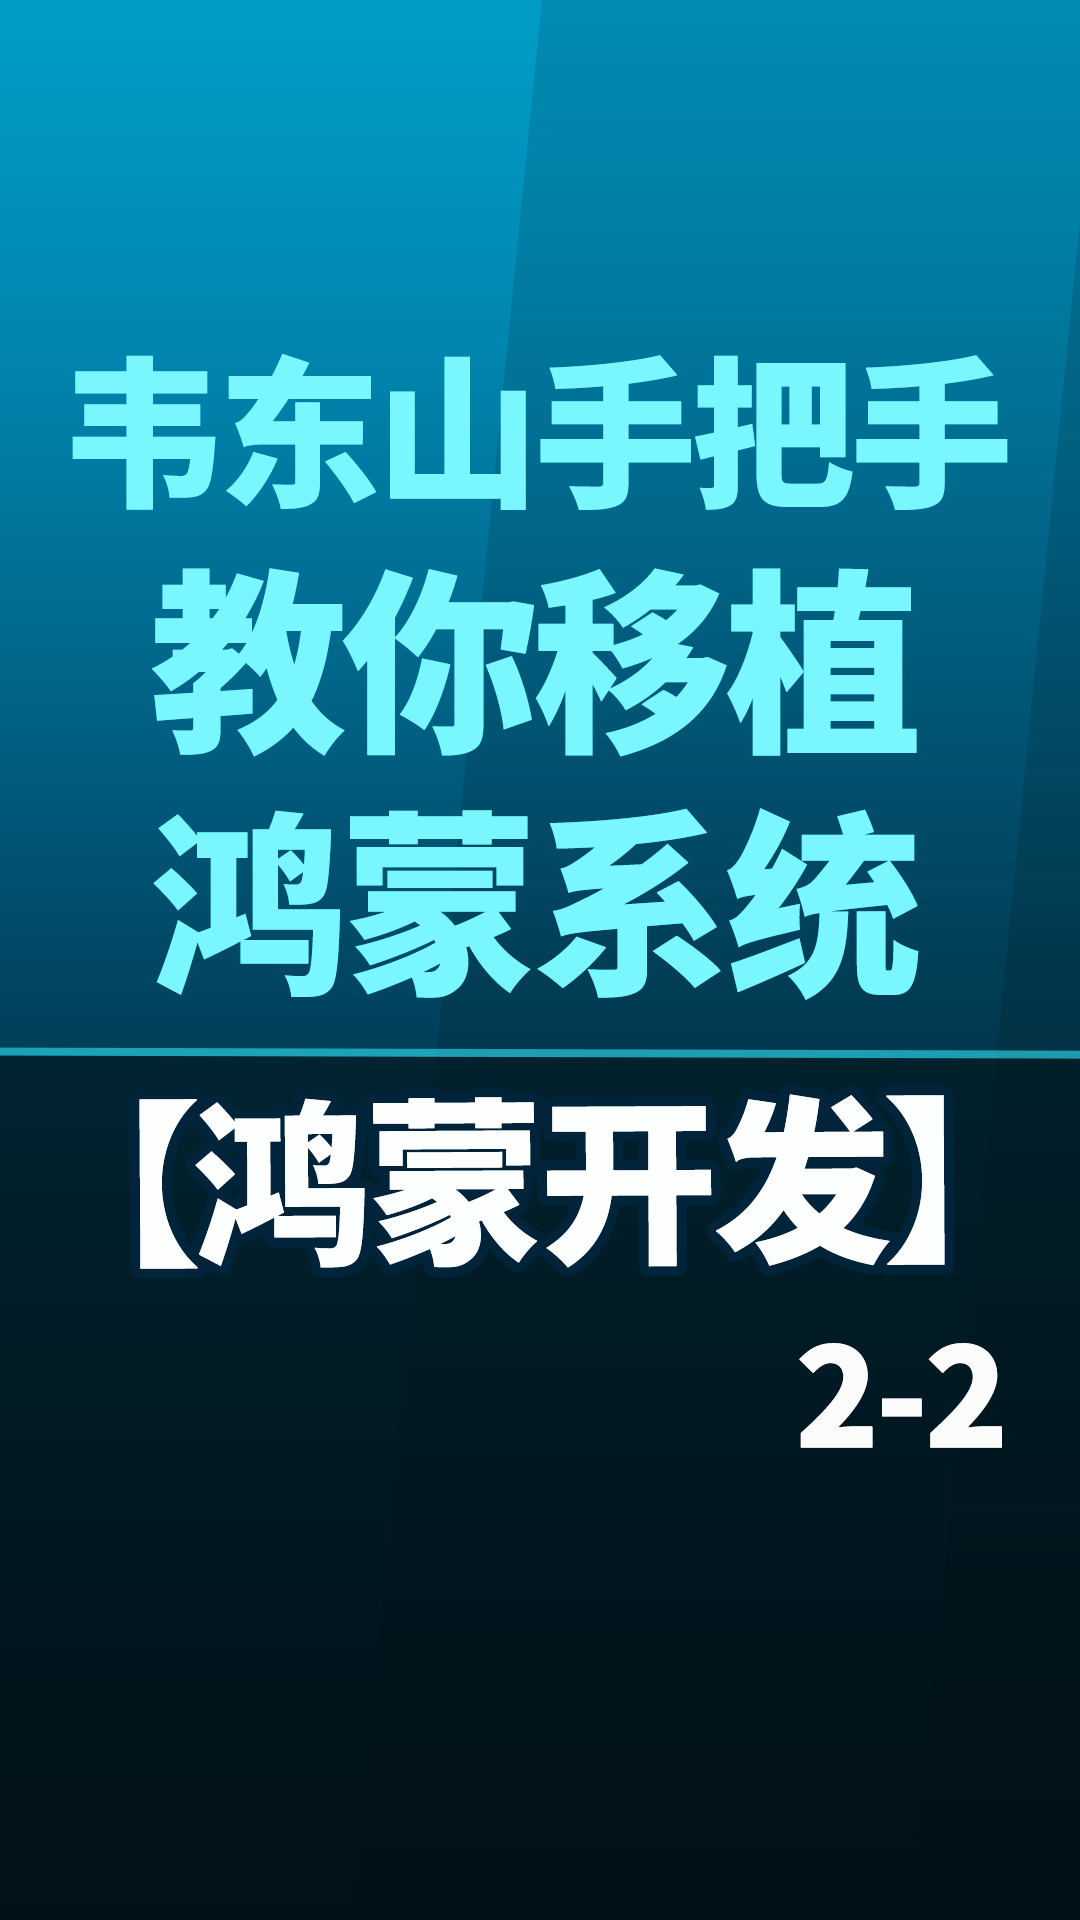 【鸿蒙开发】韦东山手把手教你移植鸿蒙系统 - 2-2#嵌入式开发 